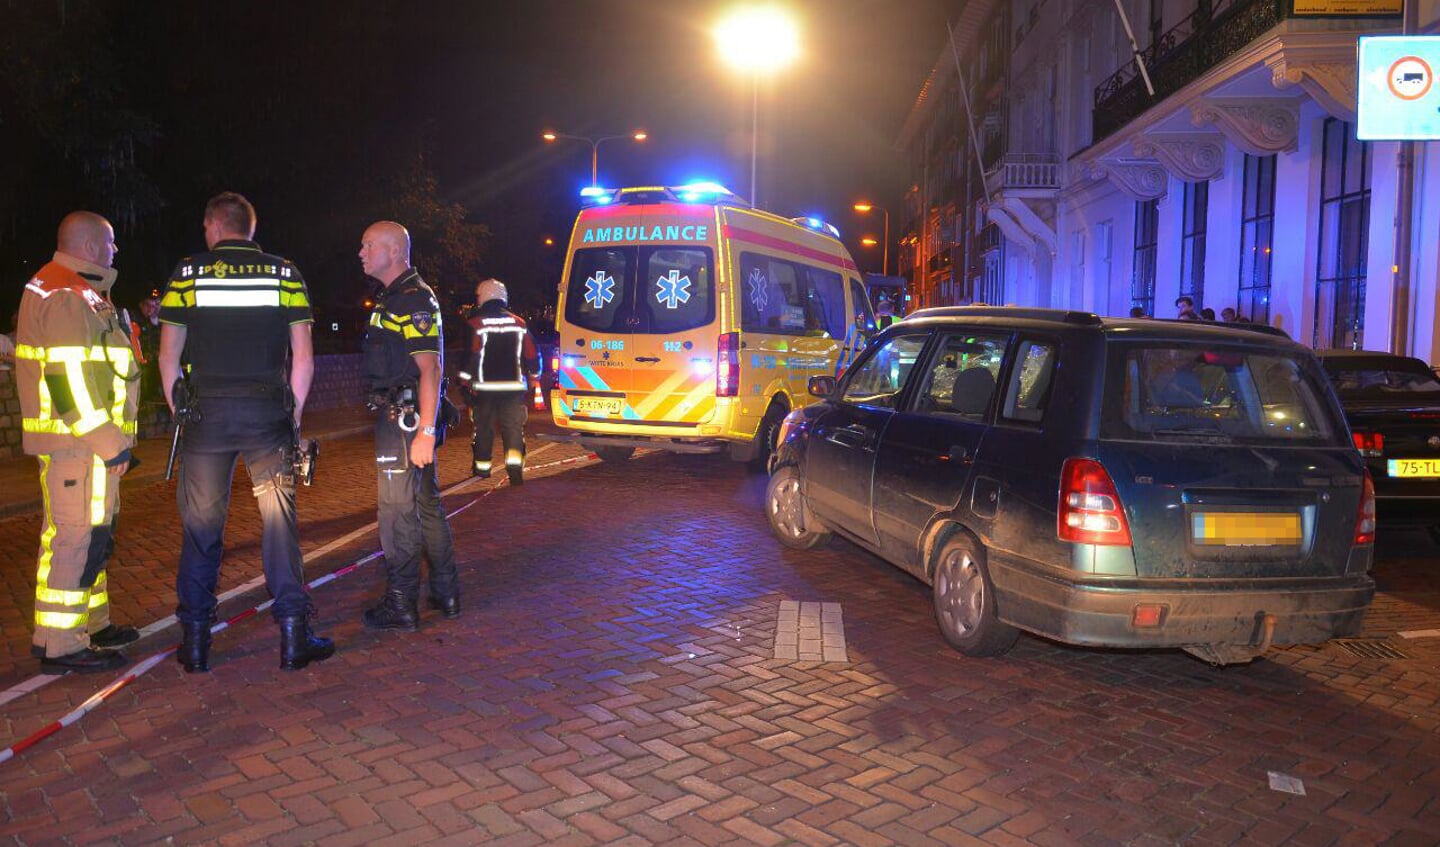 Ernstig ongeval tussen auto en voetganger in Zutphen. Foto: GinoPress B.V.